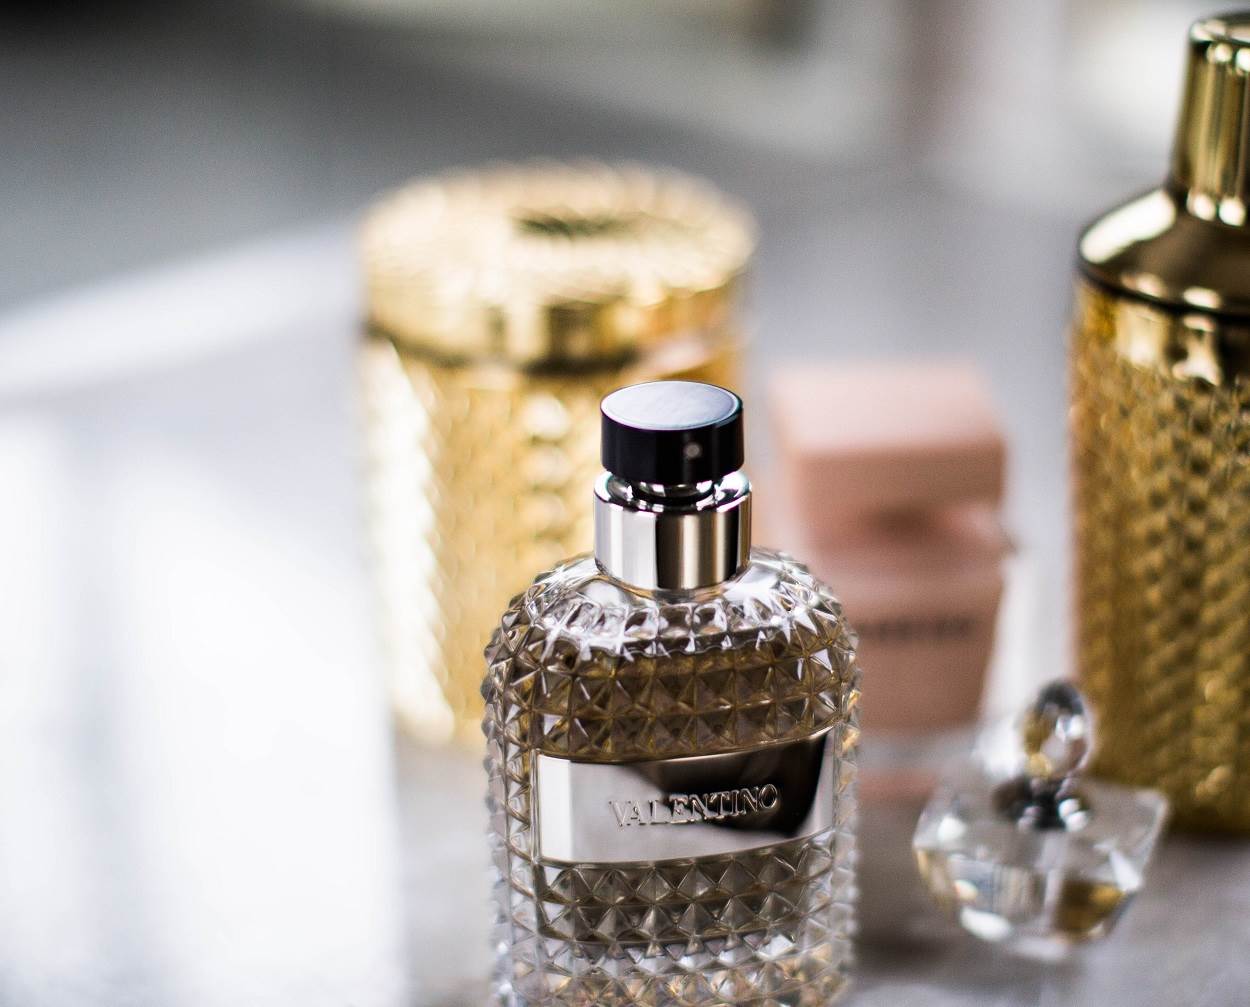  Ukoliko ste se ikada pitali, evo 7 najskupljih parfema na svetu koje poseduje veoma mali broj ljudi. 